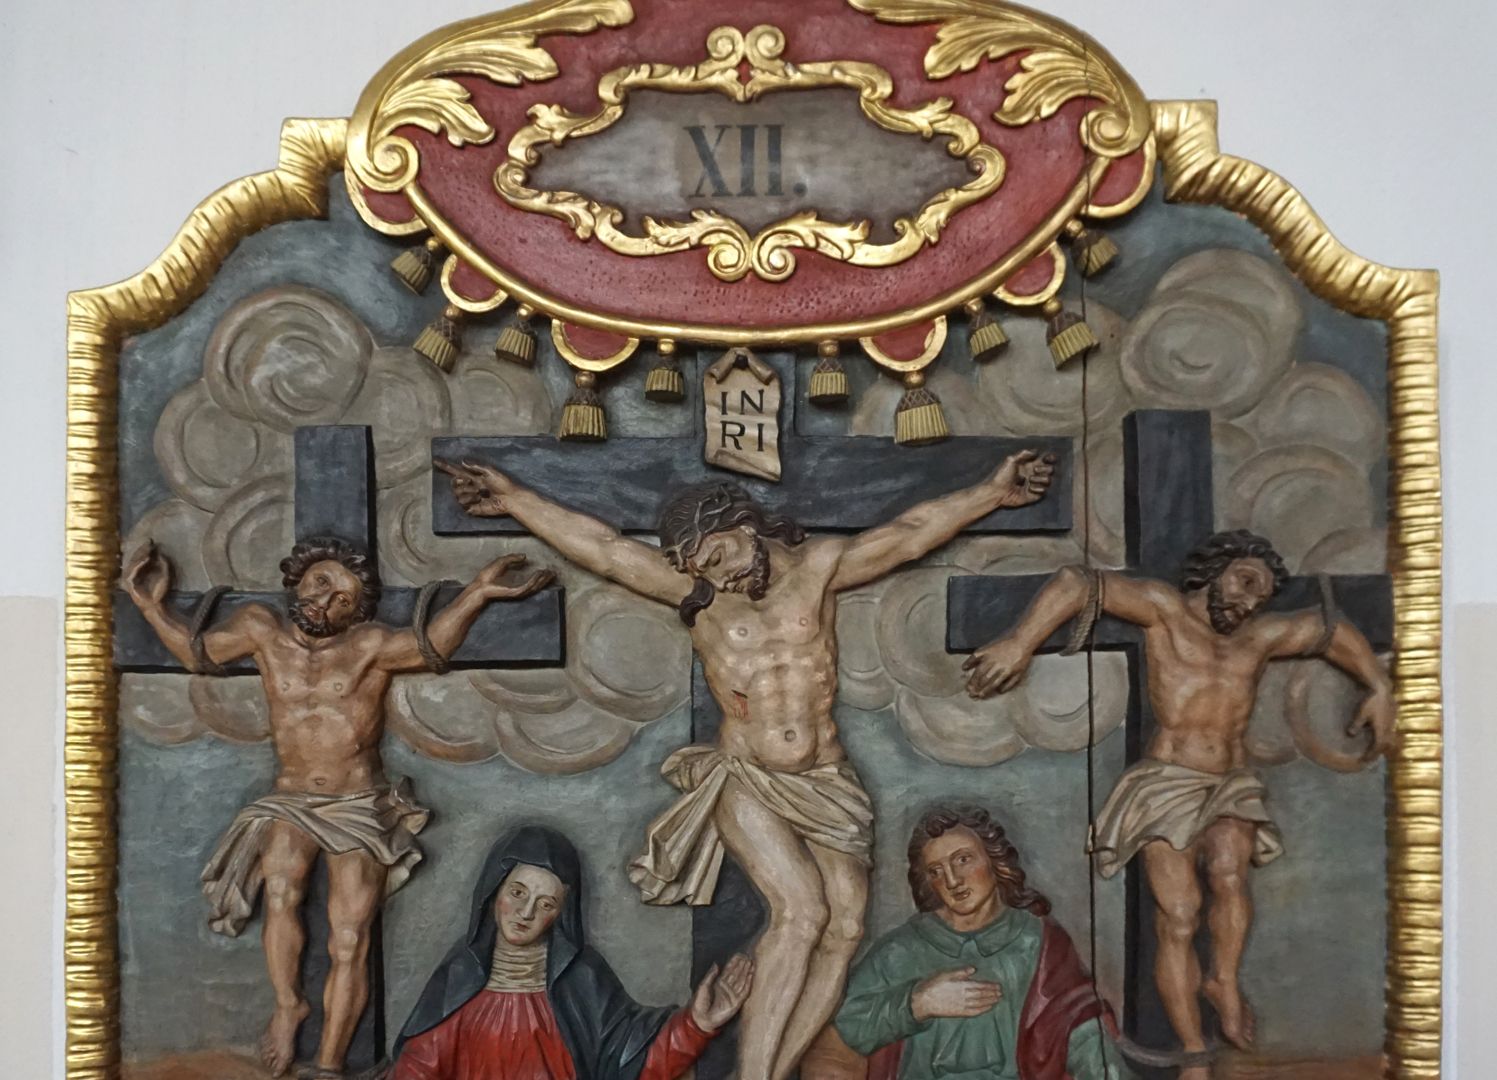 Kreuzwegstation XII / Jesus stirbt am Kreuz obere Tafelhälfte mit Nummerierung, Jesus am Kreuz zwischen den zwei Schächern